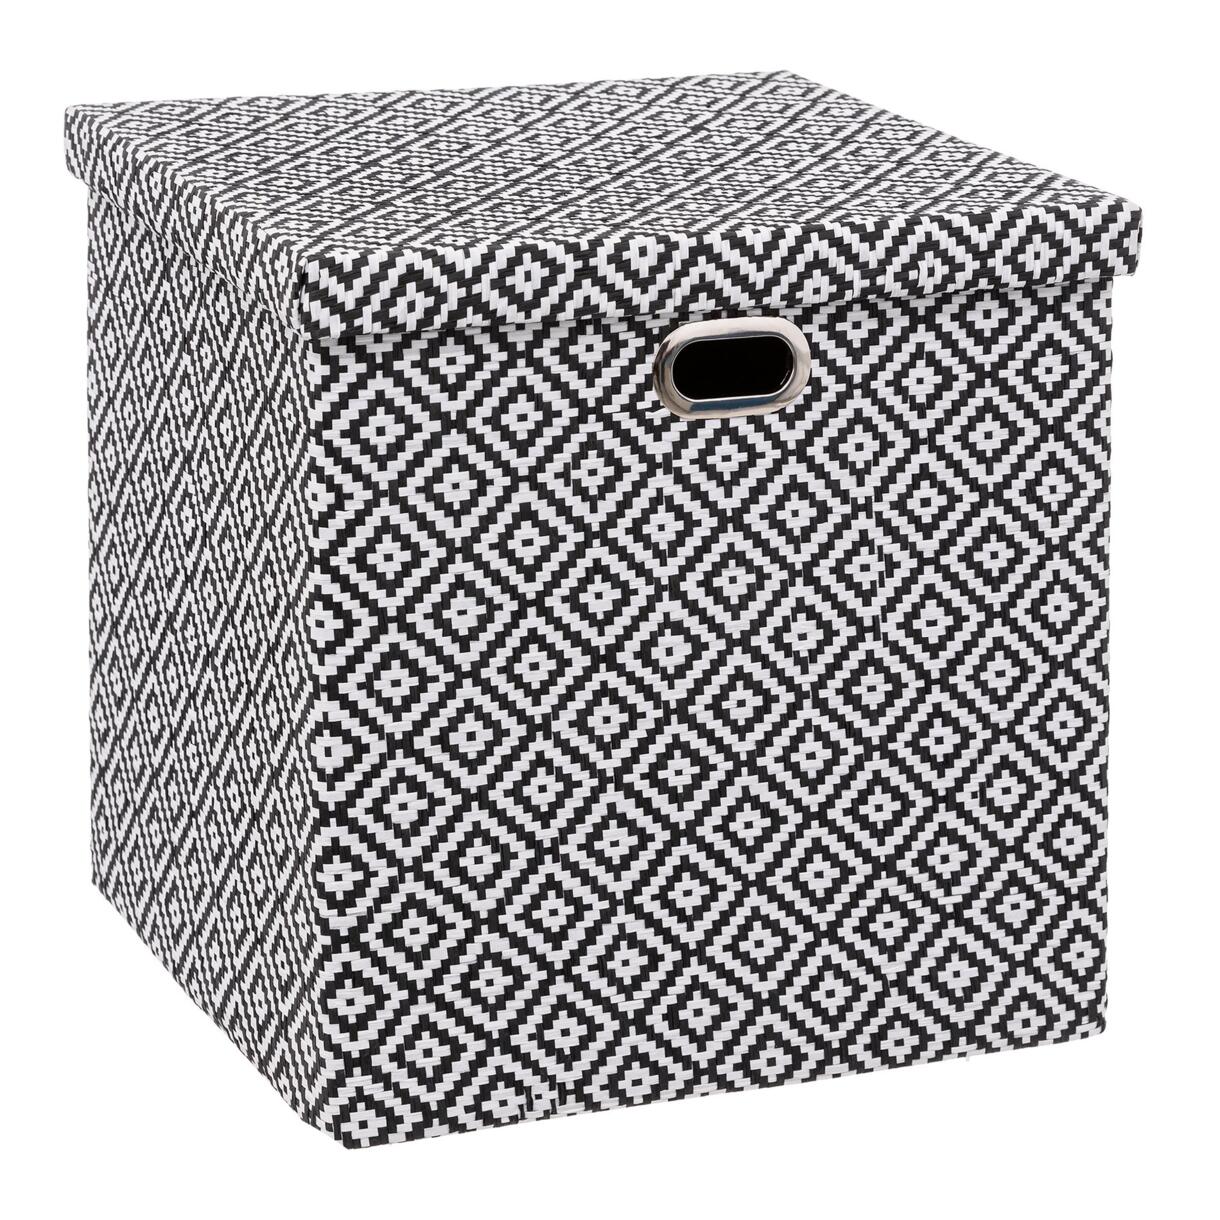 Caja de almacenamiento (31 x 31 cm) con dibujos en blanco y negro 1